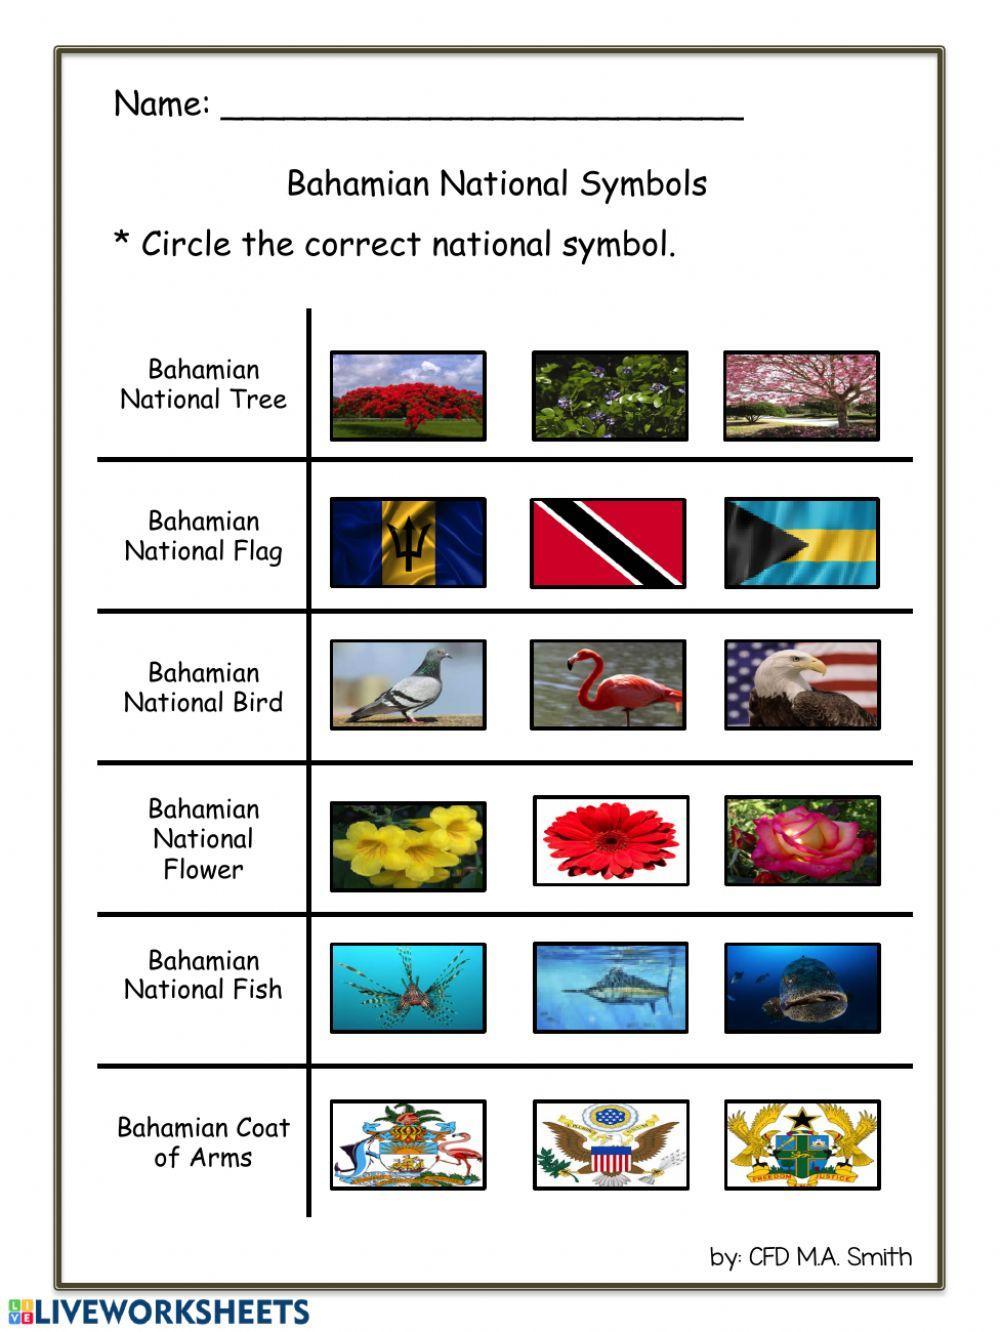 Bahamian National Symbols